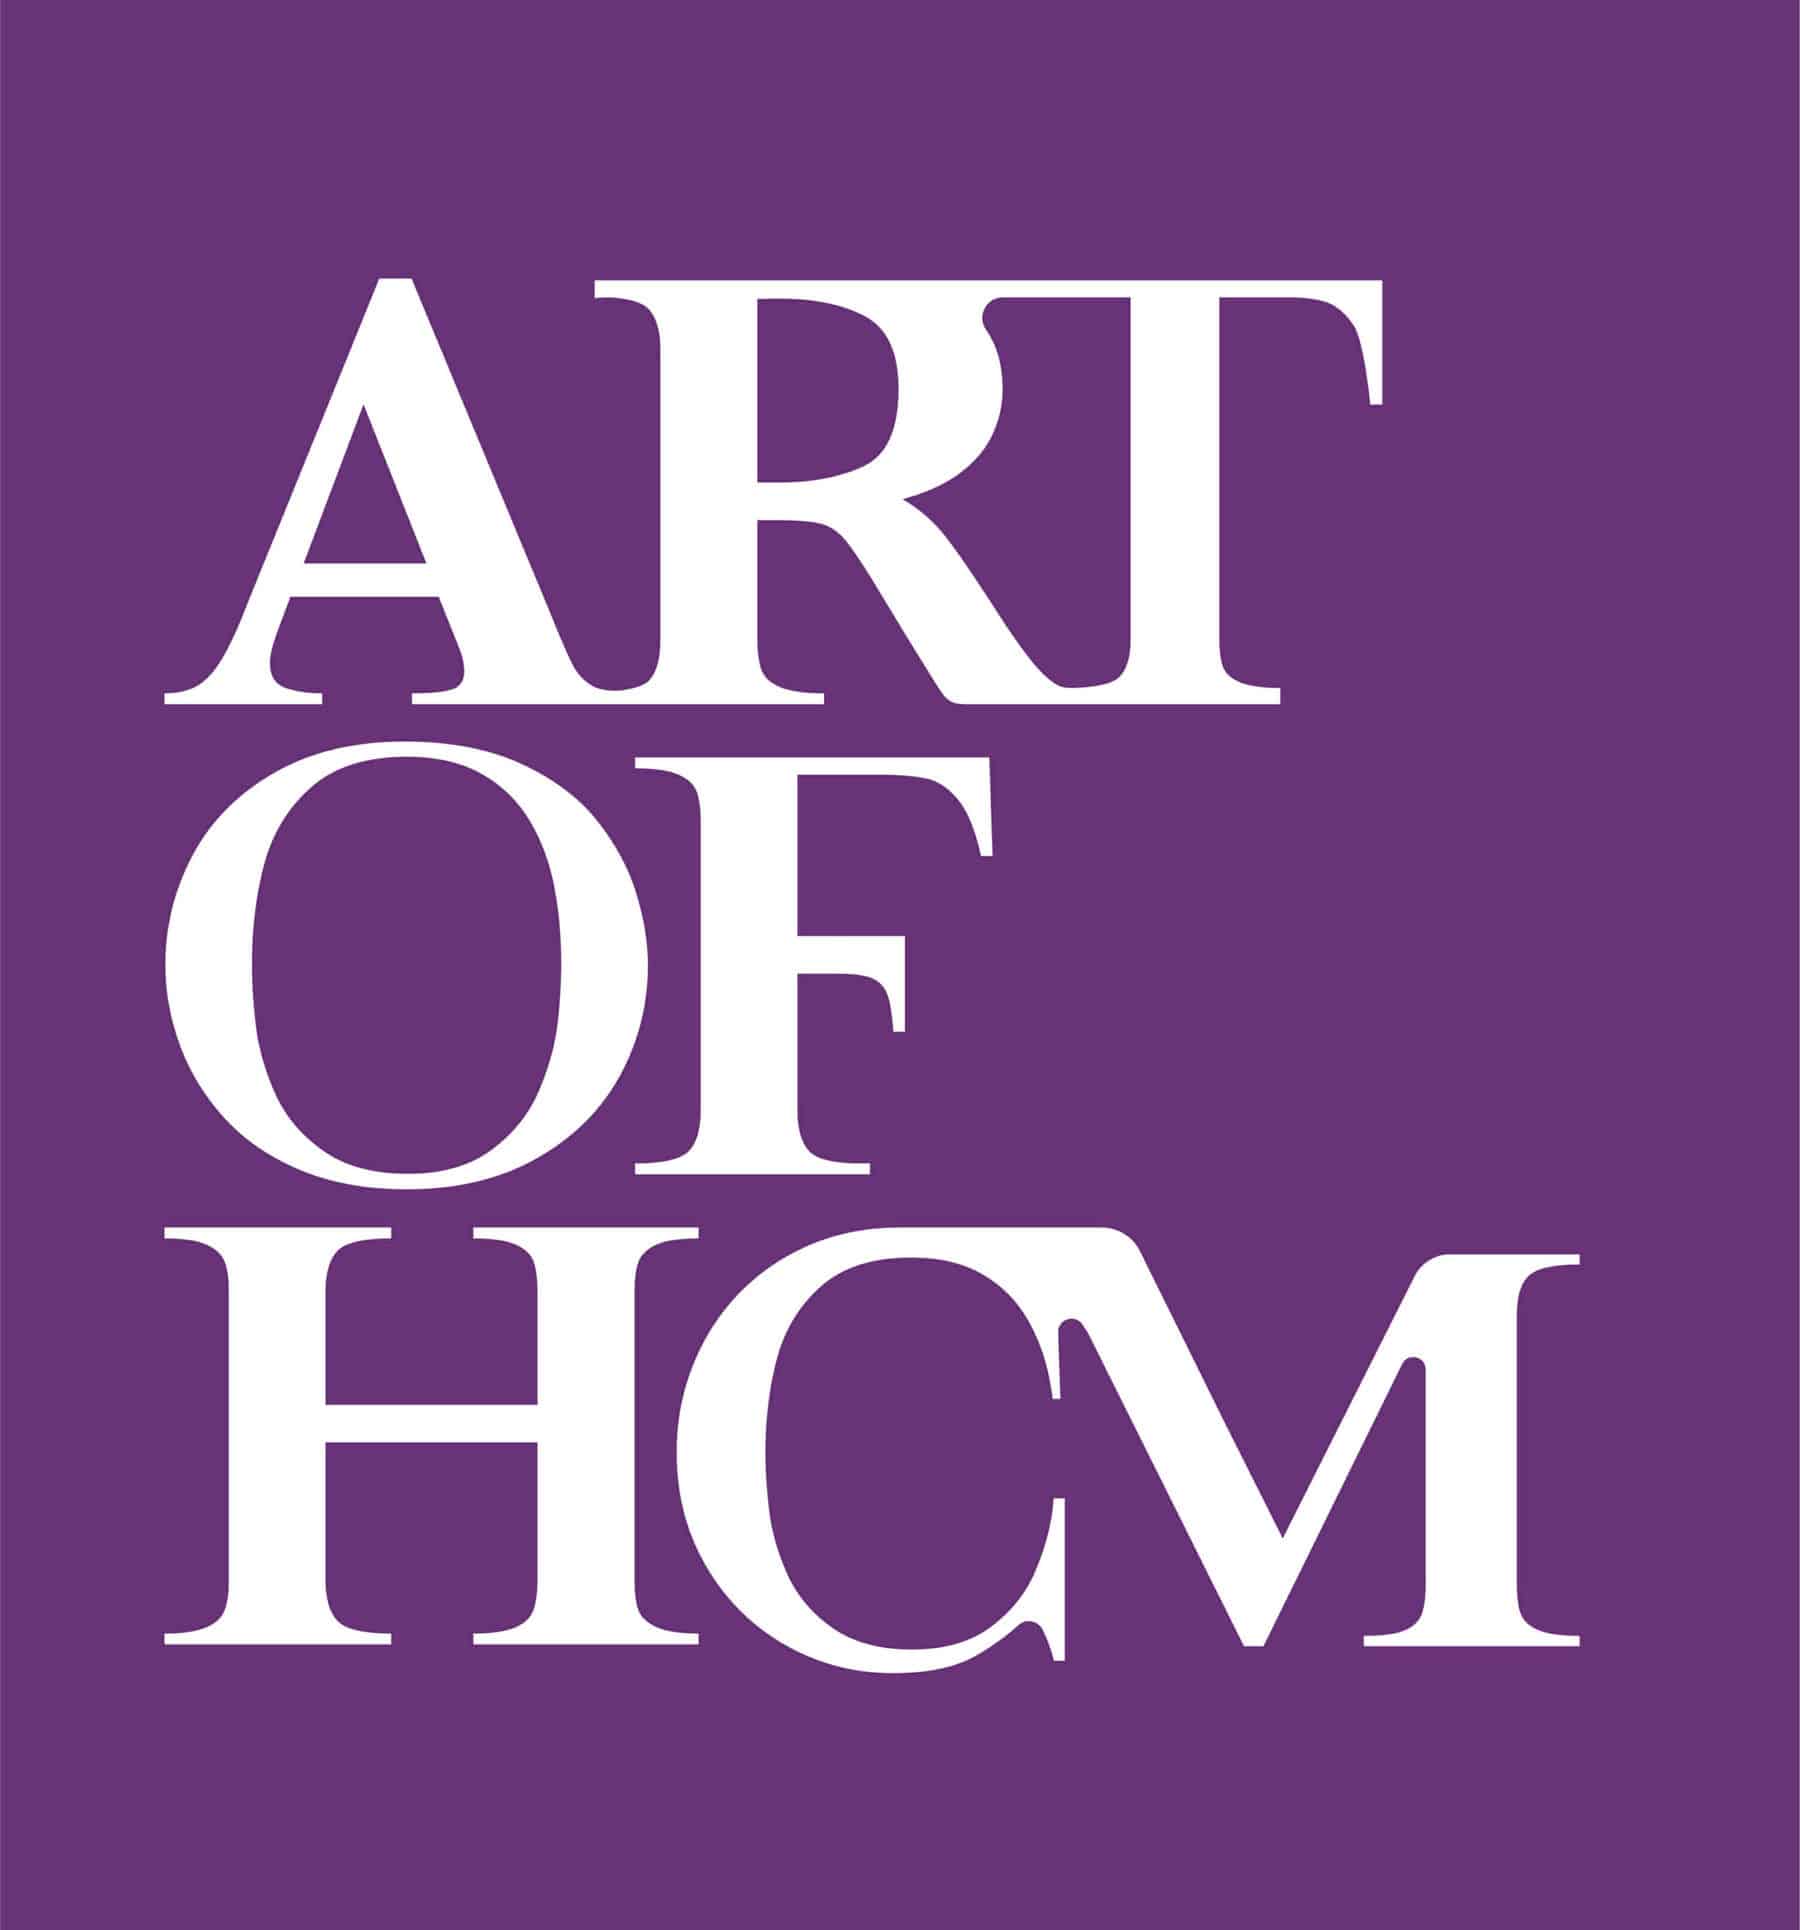 The Art of HCM